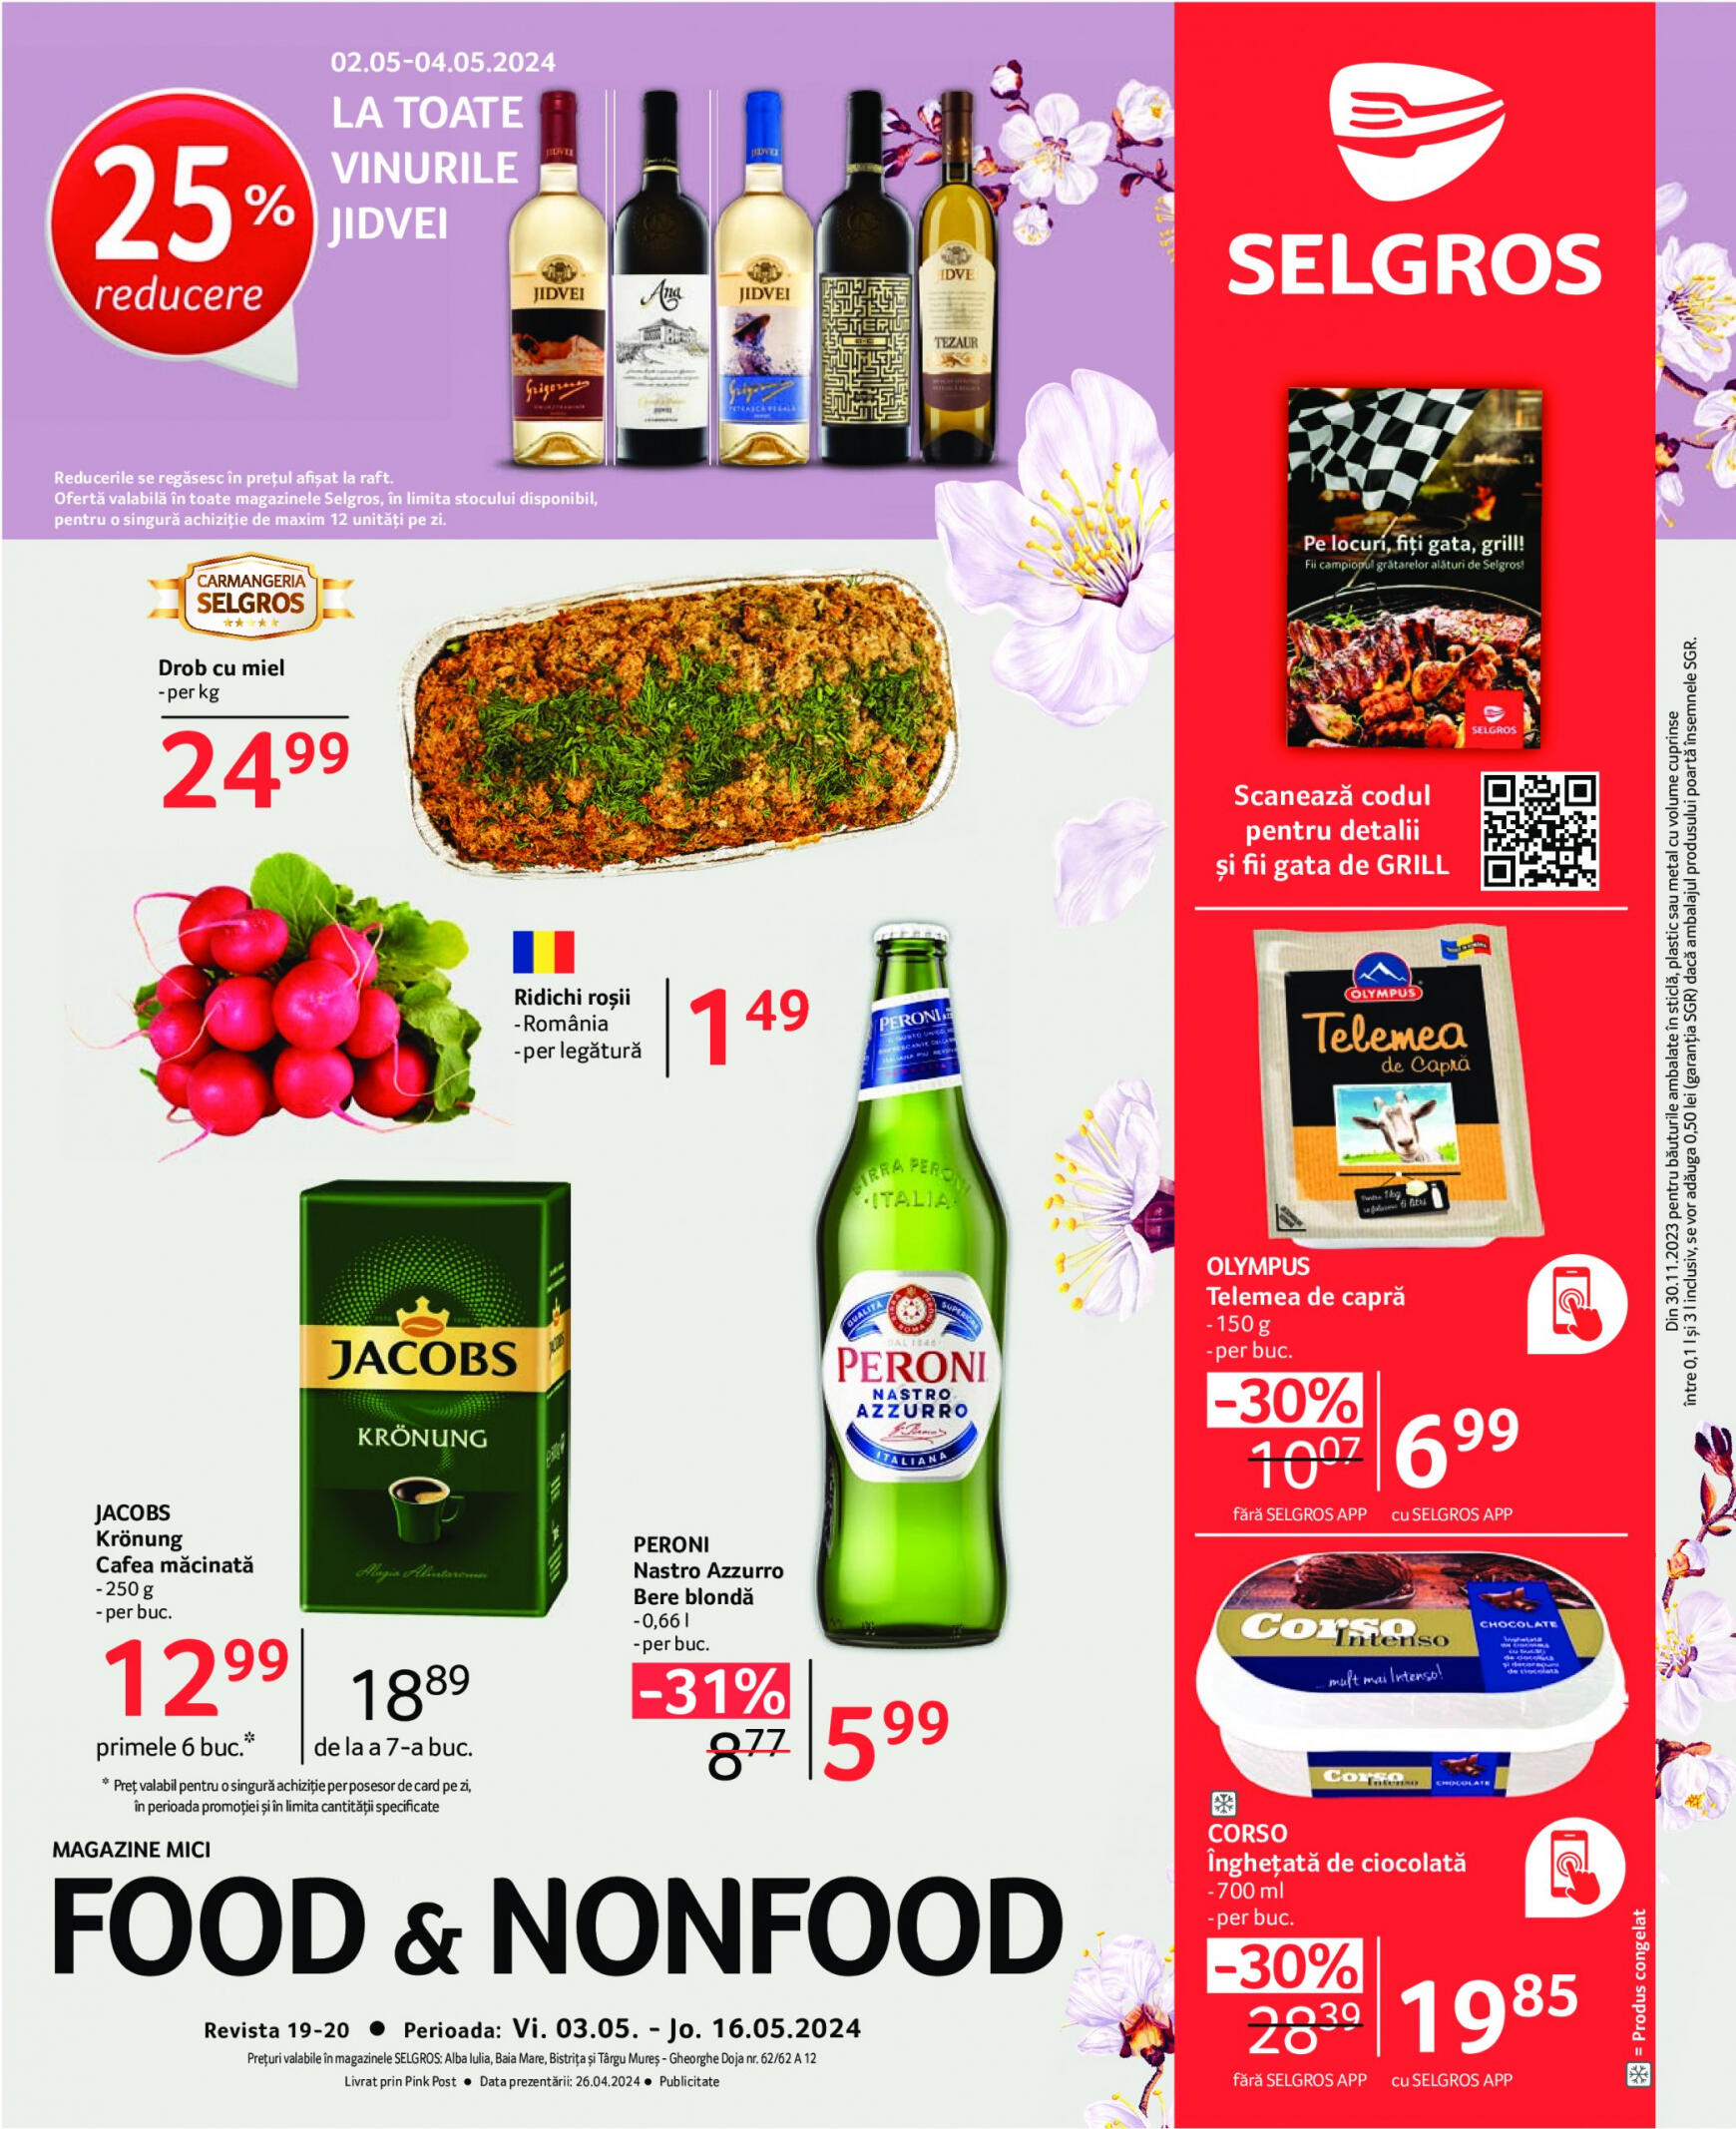 selgros - Catalog nou Selgros - Food & Nonfood 03.05. - 16.05.